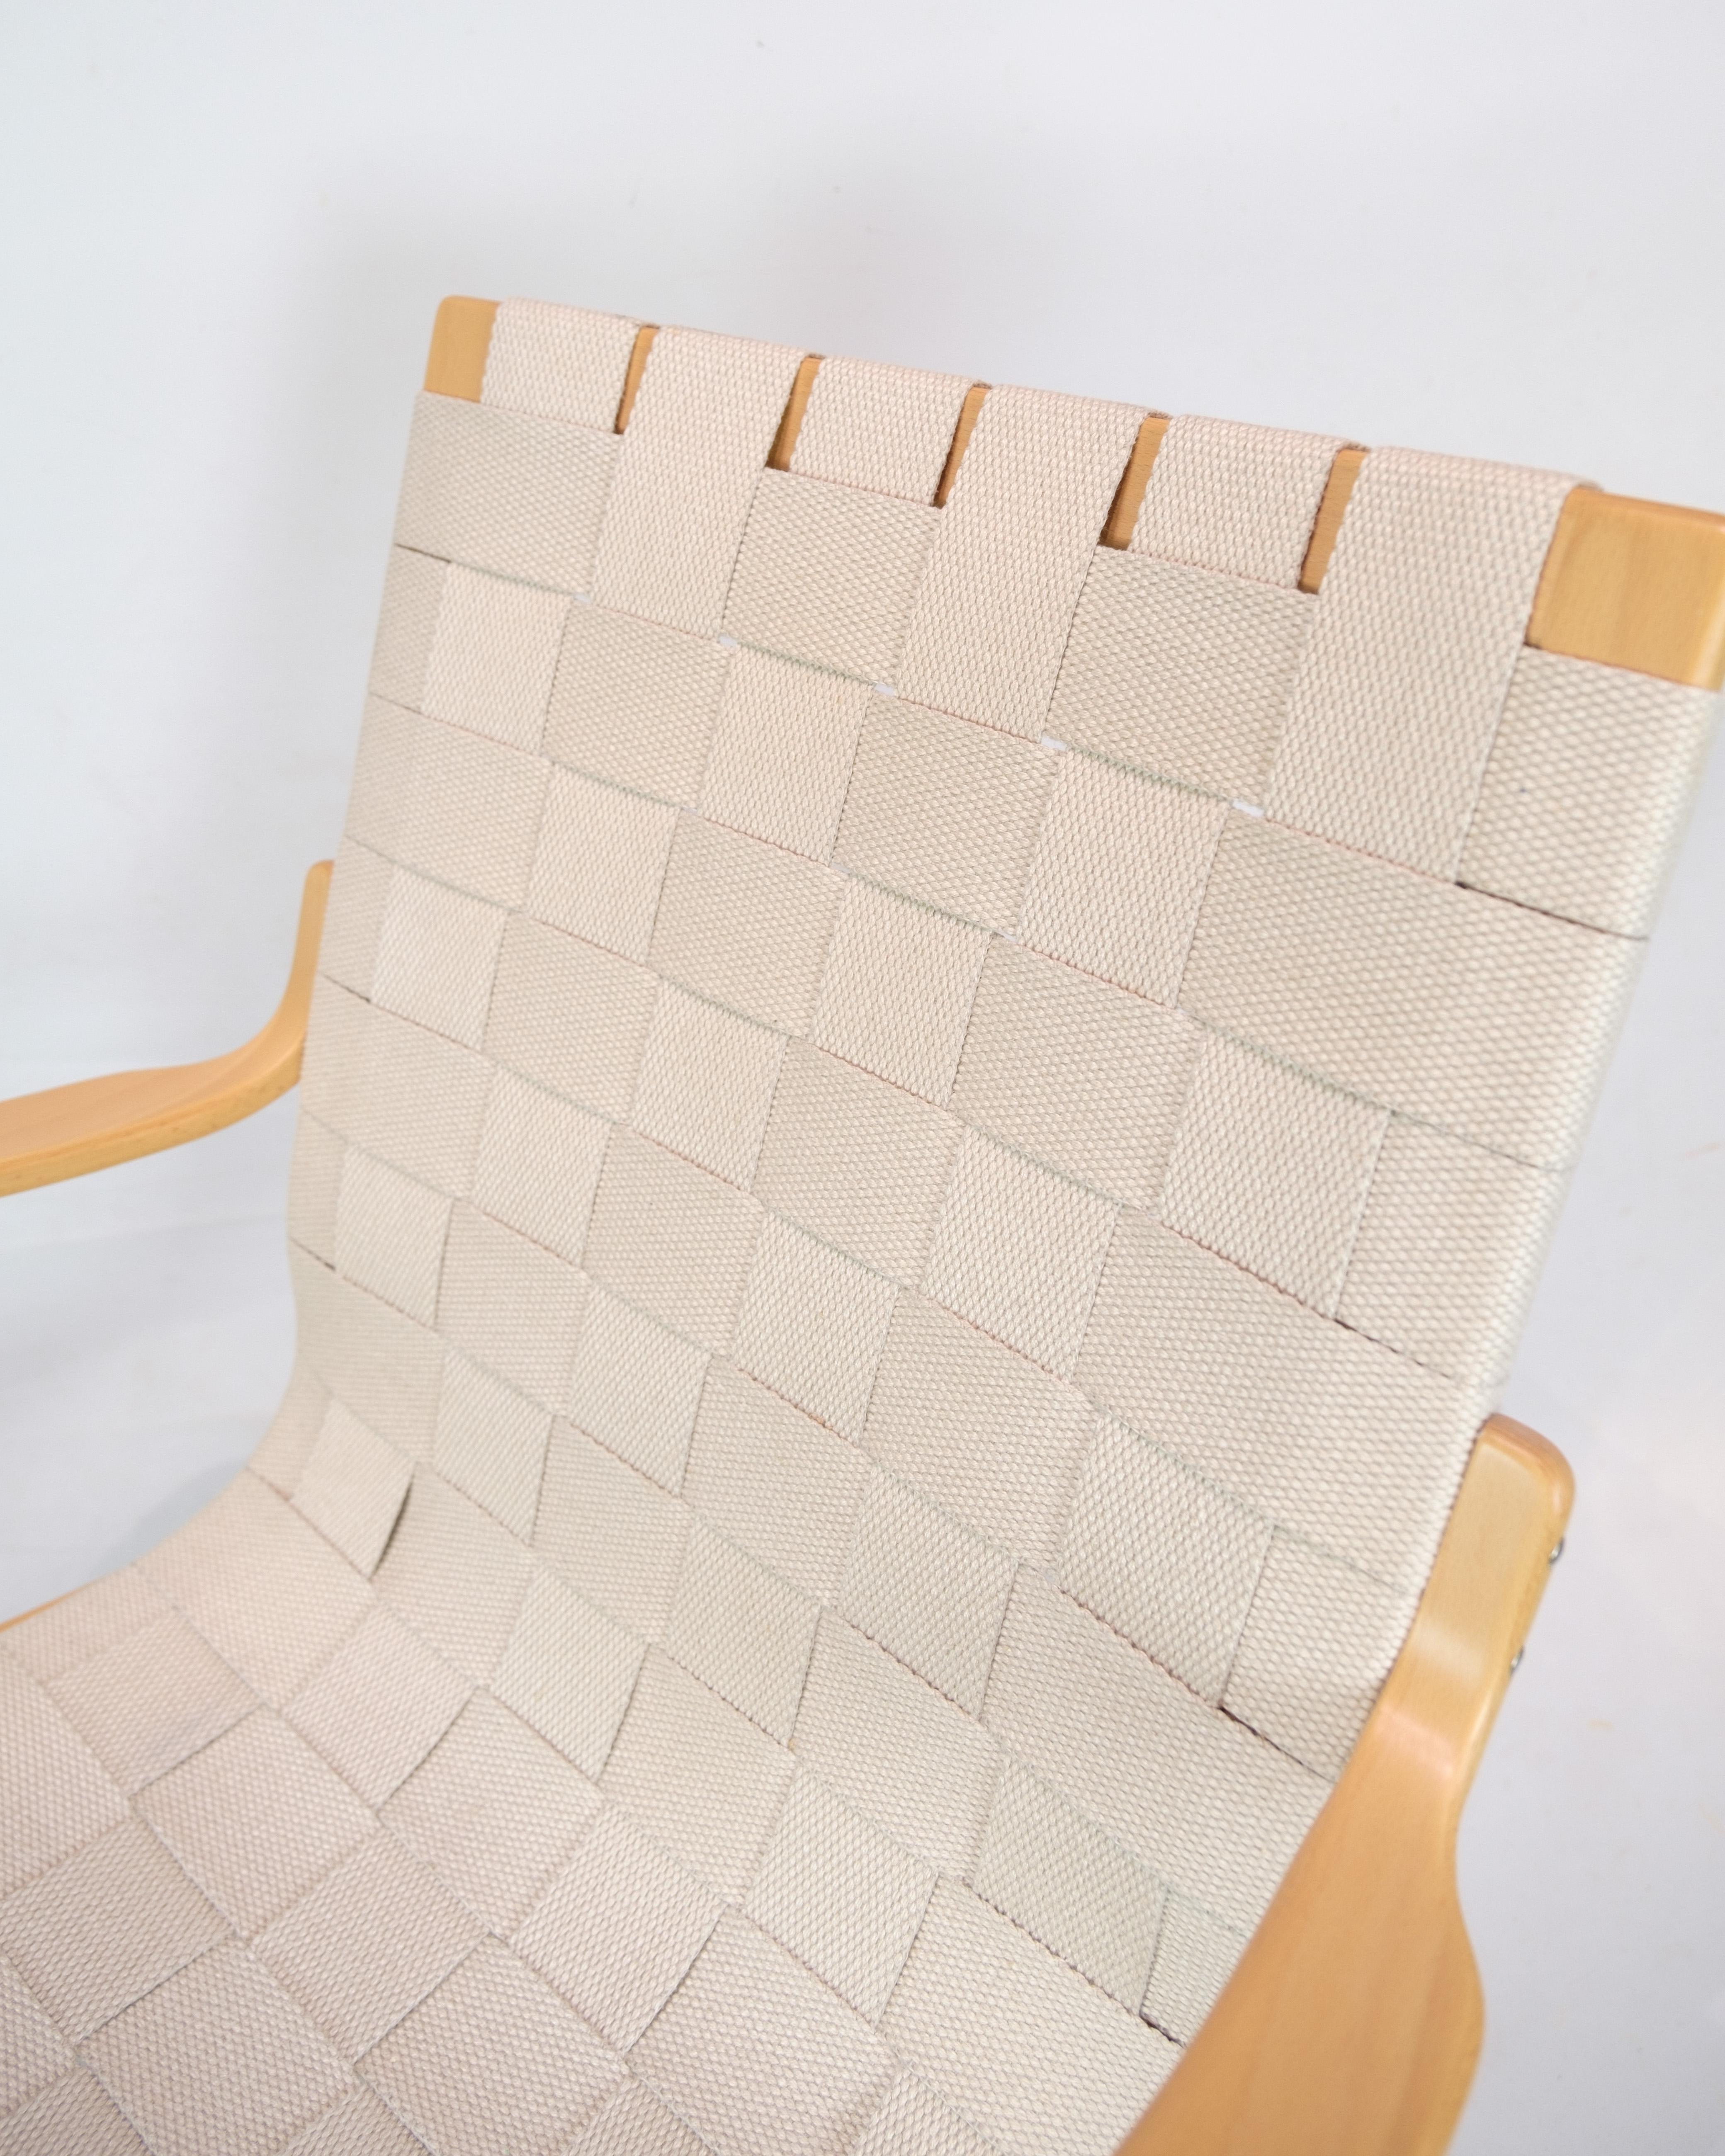 Ce fauteuil, connu sous le nom de Design/One, représente une pièce exemplaire du design mobilier créé par le célèbre designer suédois Bruno Mathsson. La chaise est fabriquée en hêtre courbé, ce qui lui confère une forme naturelle et élégante.

Ce